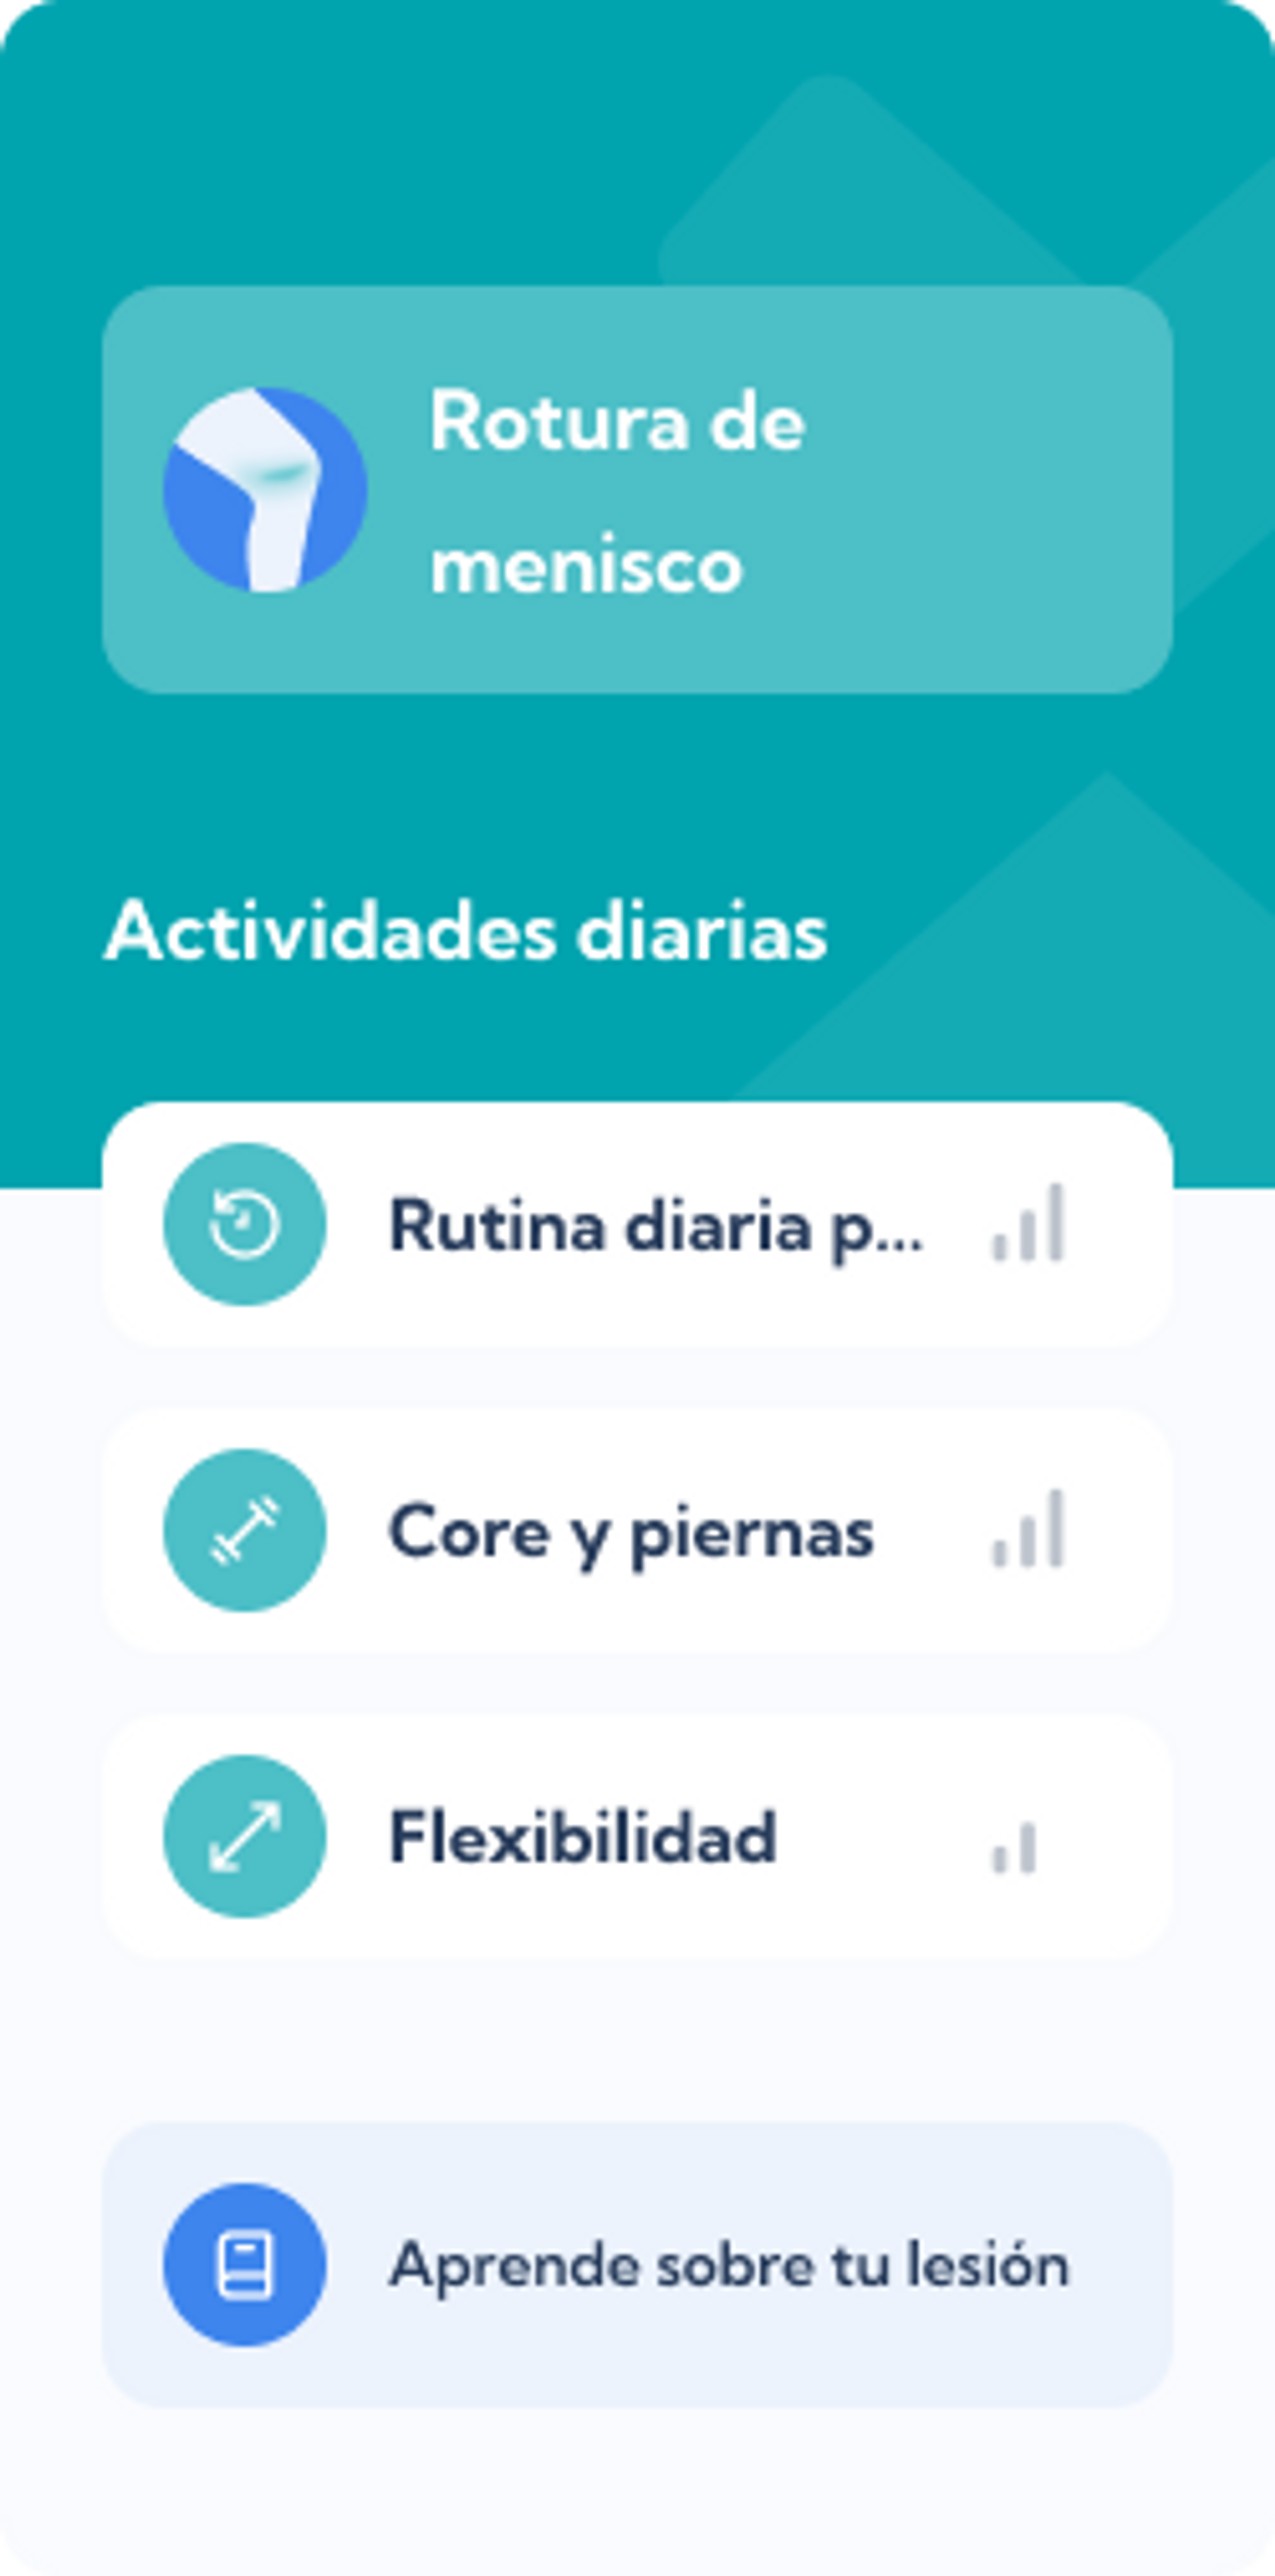 Plan de rotura de menisco – Dashboard overview de Exakt Health app